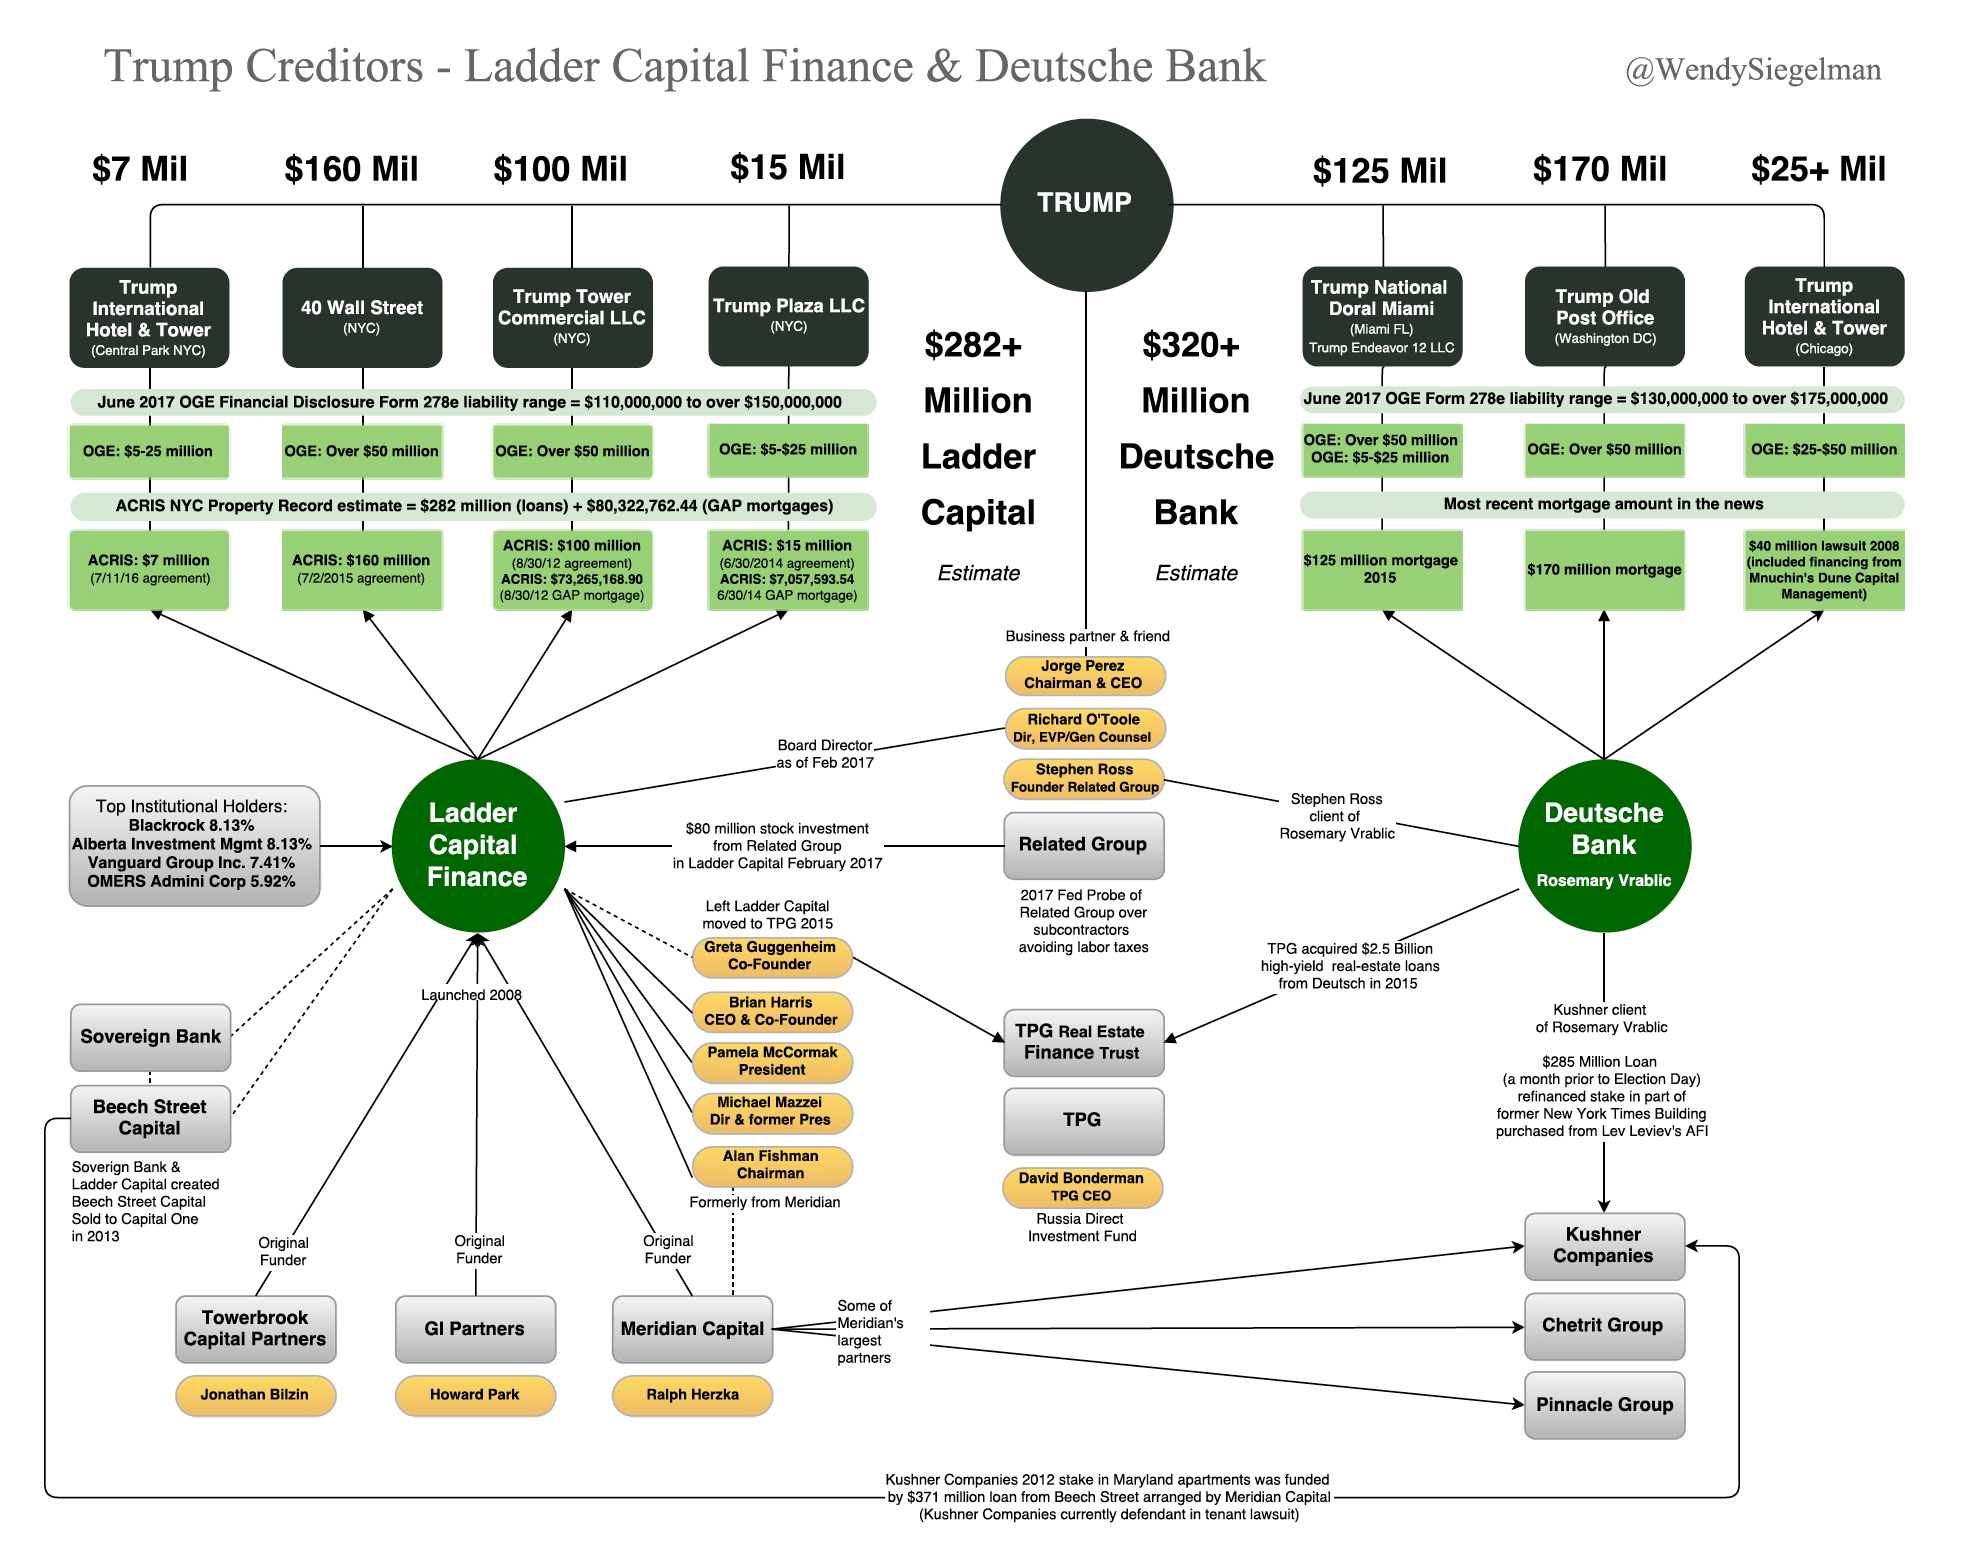 Deutsche Bank Corporate Structure Chart